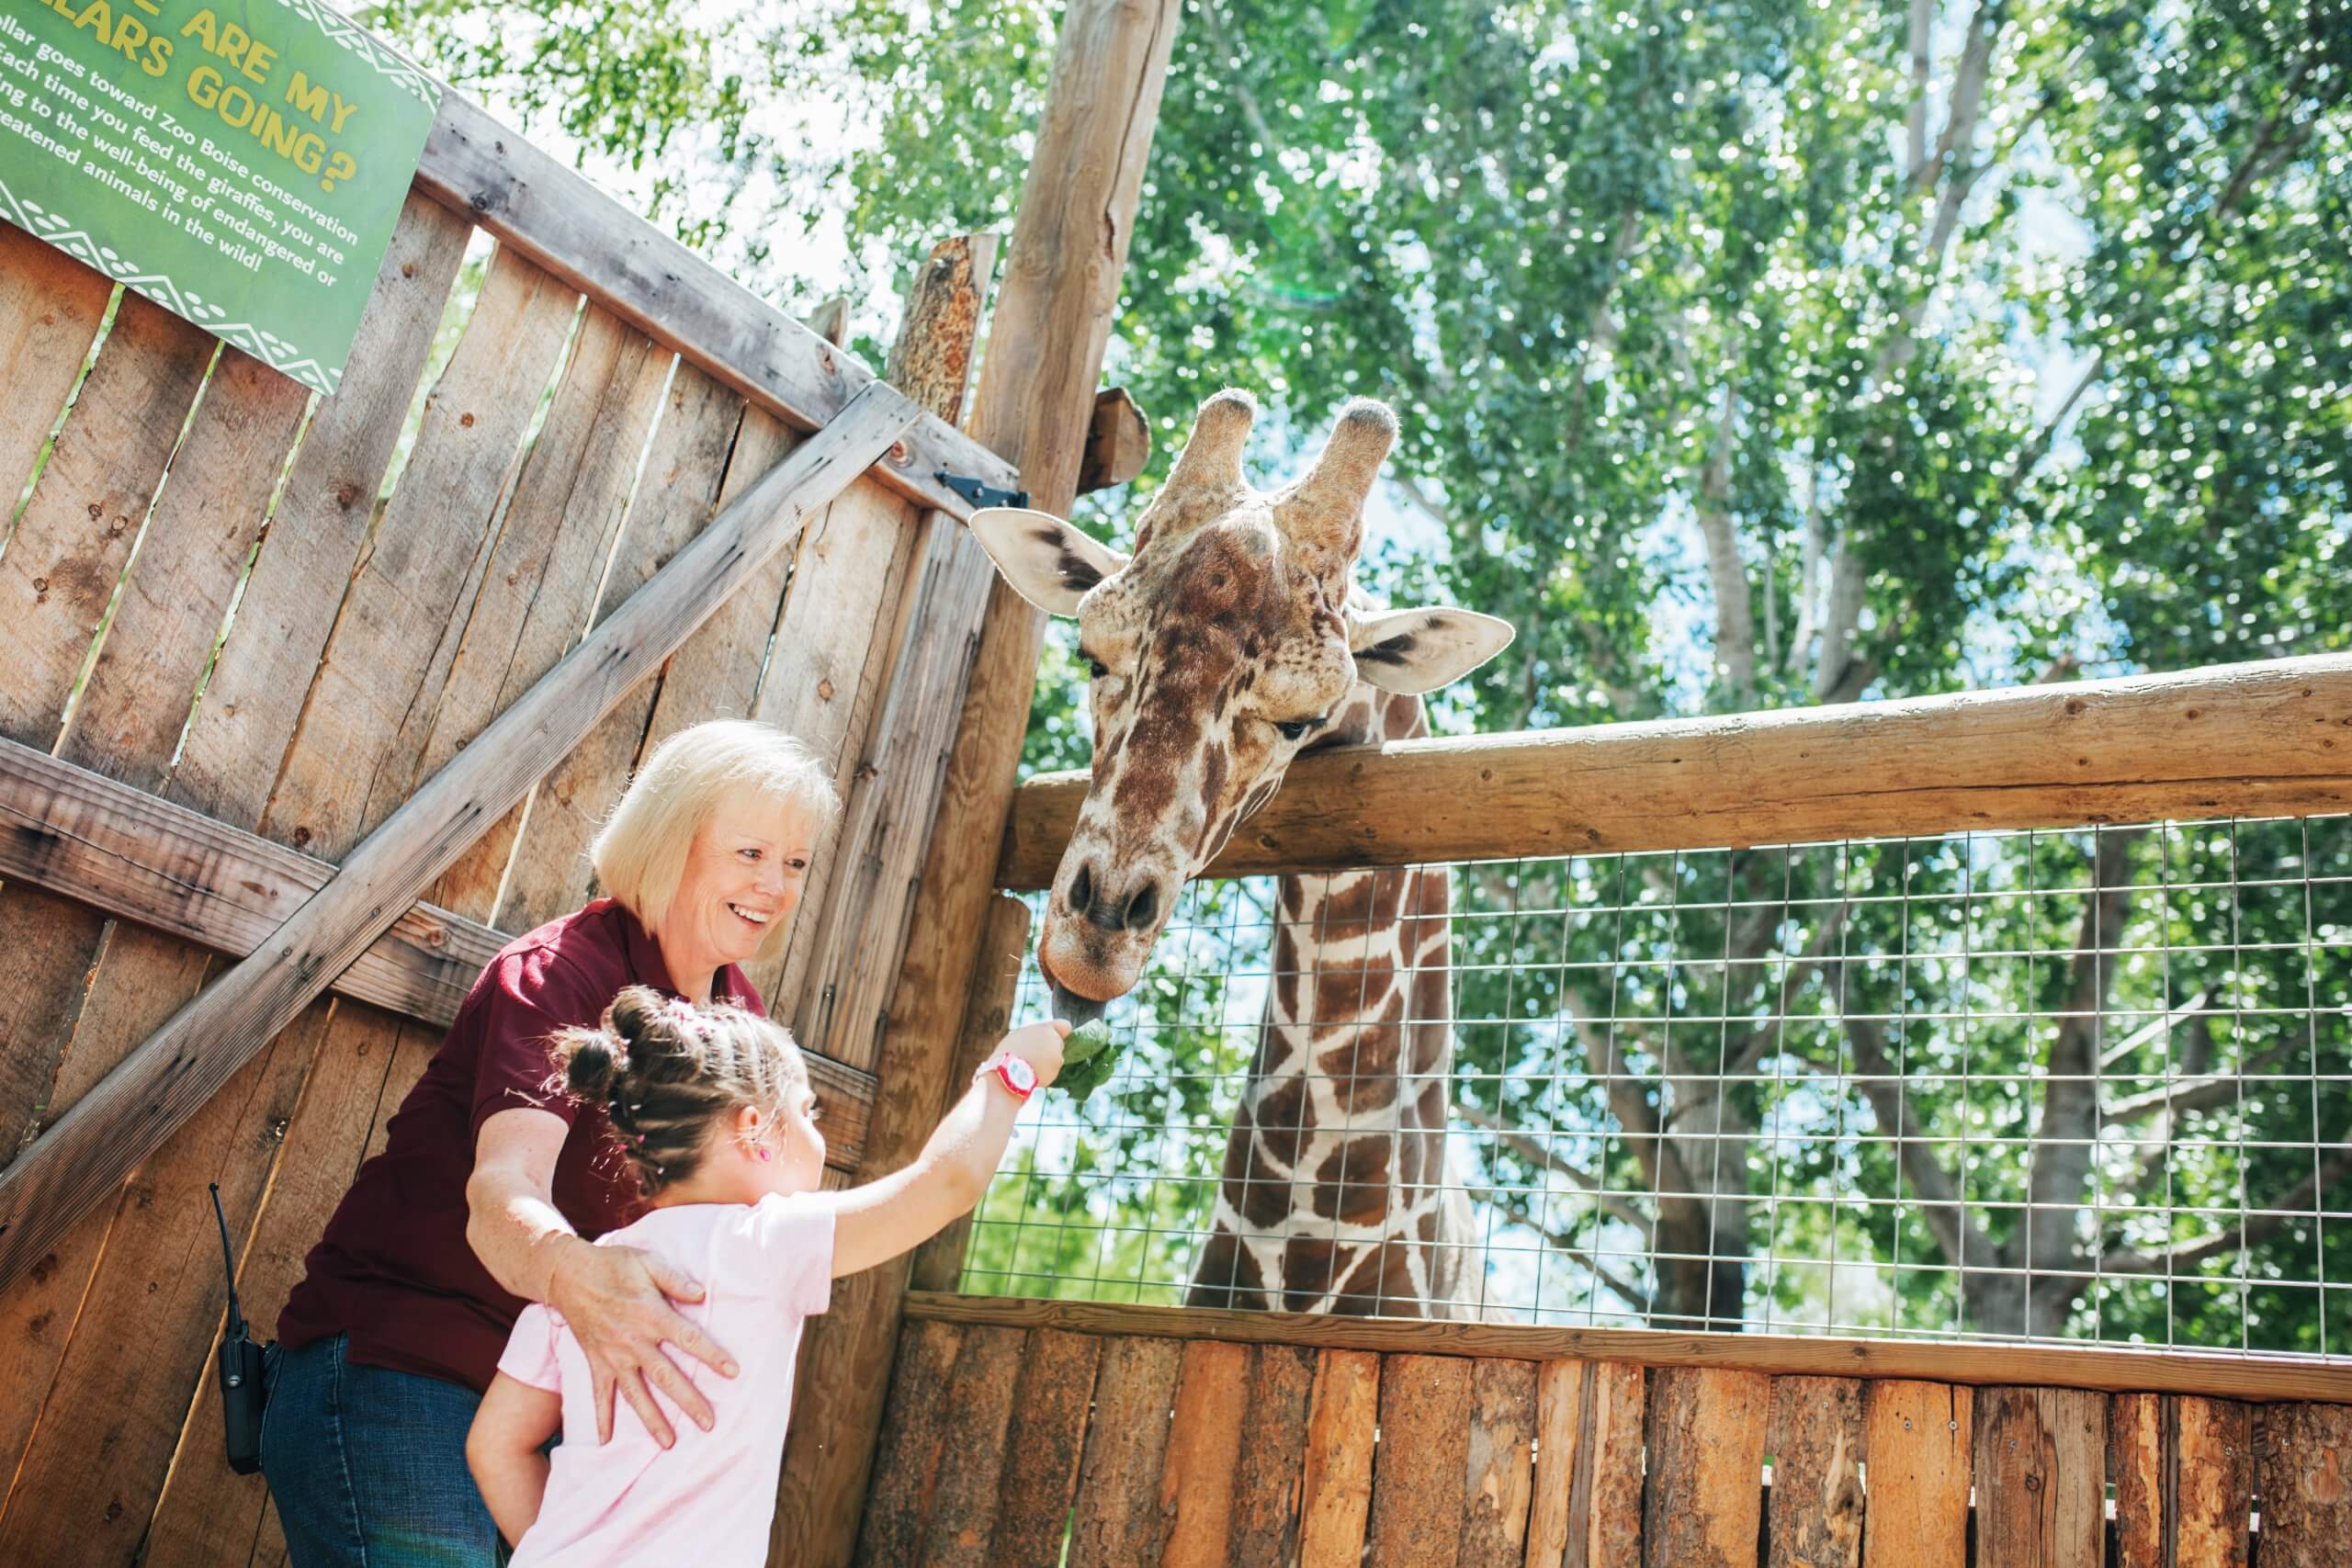 Feeding the giraffe at Zoo Boise, Boise.